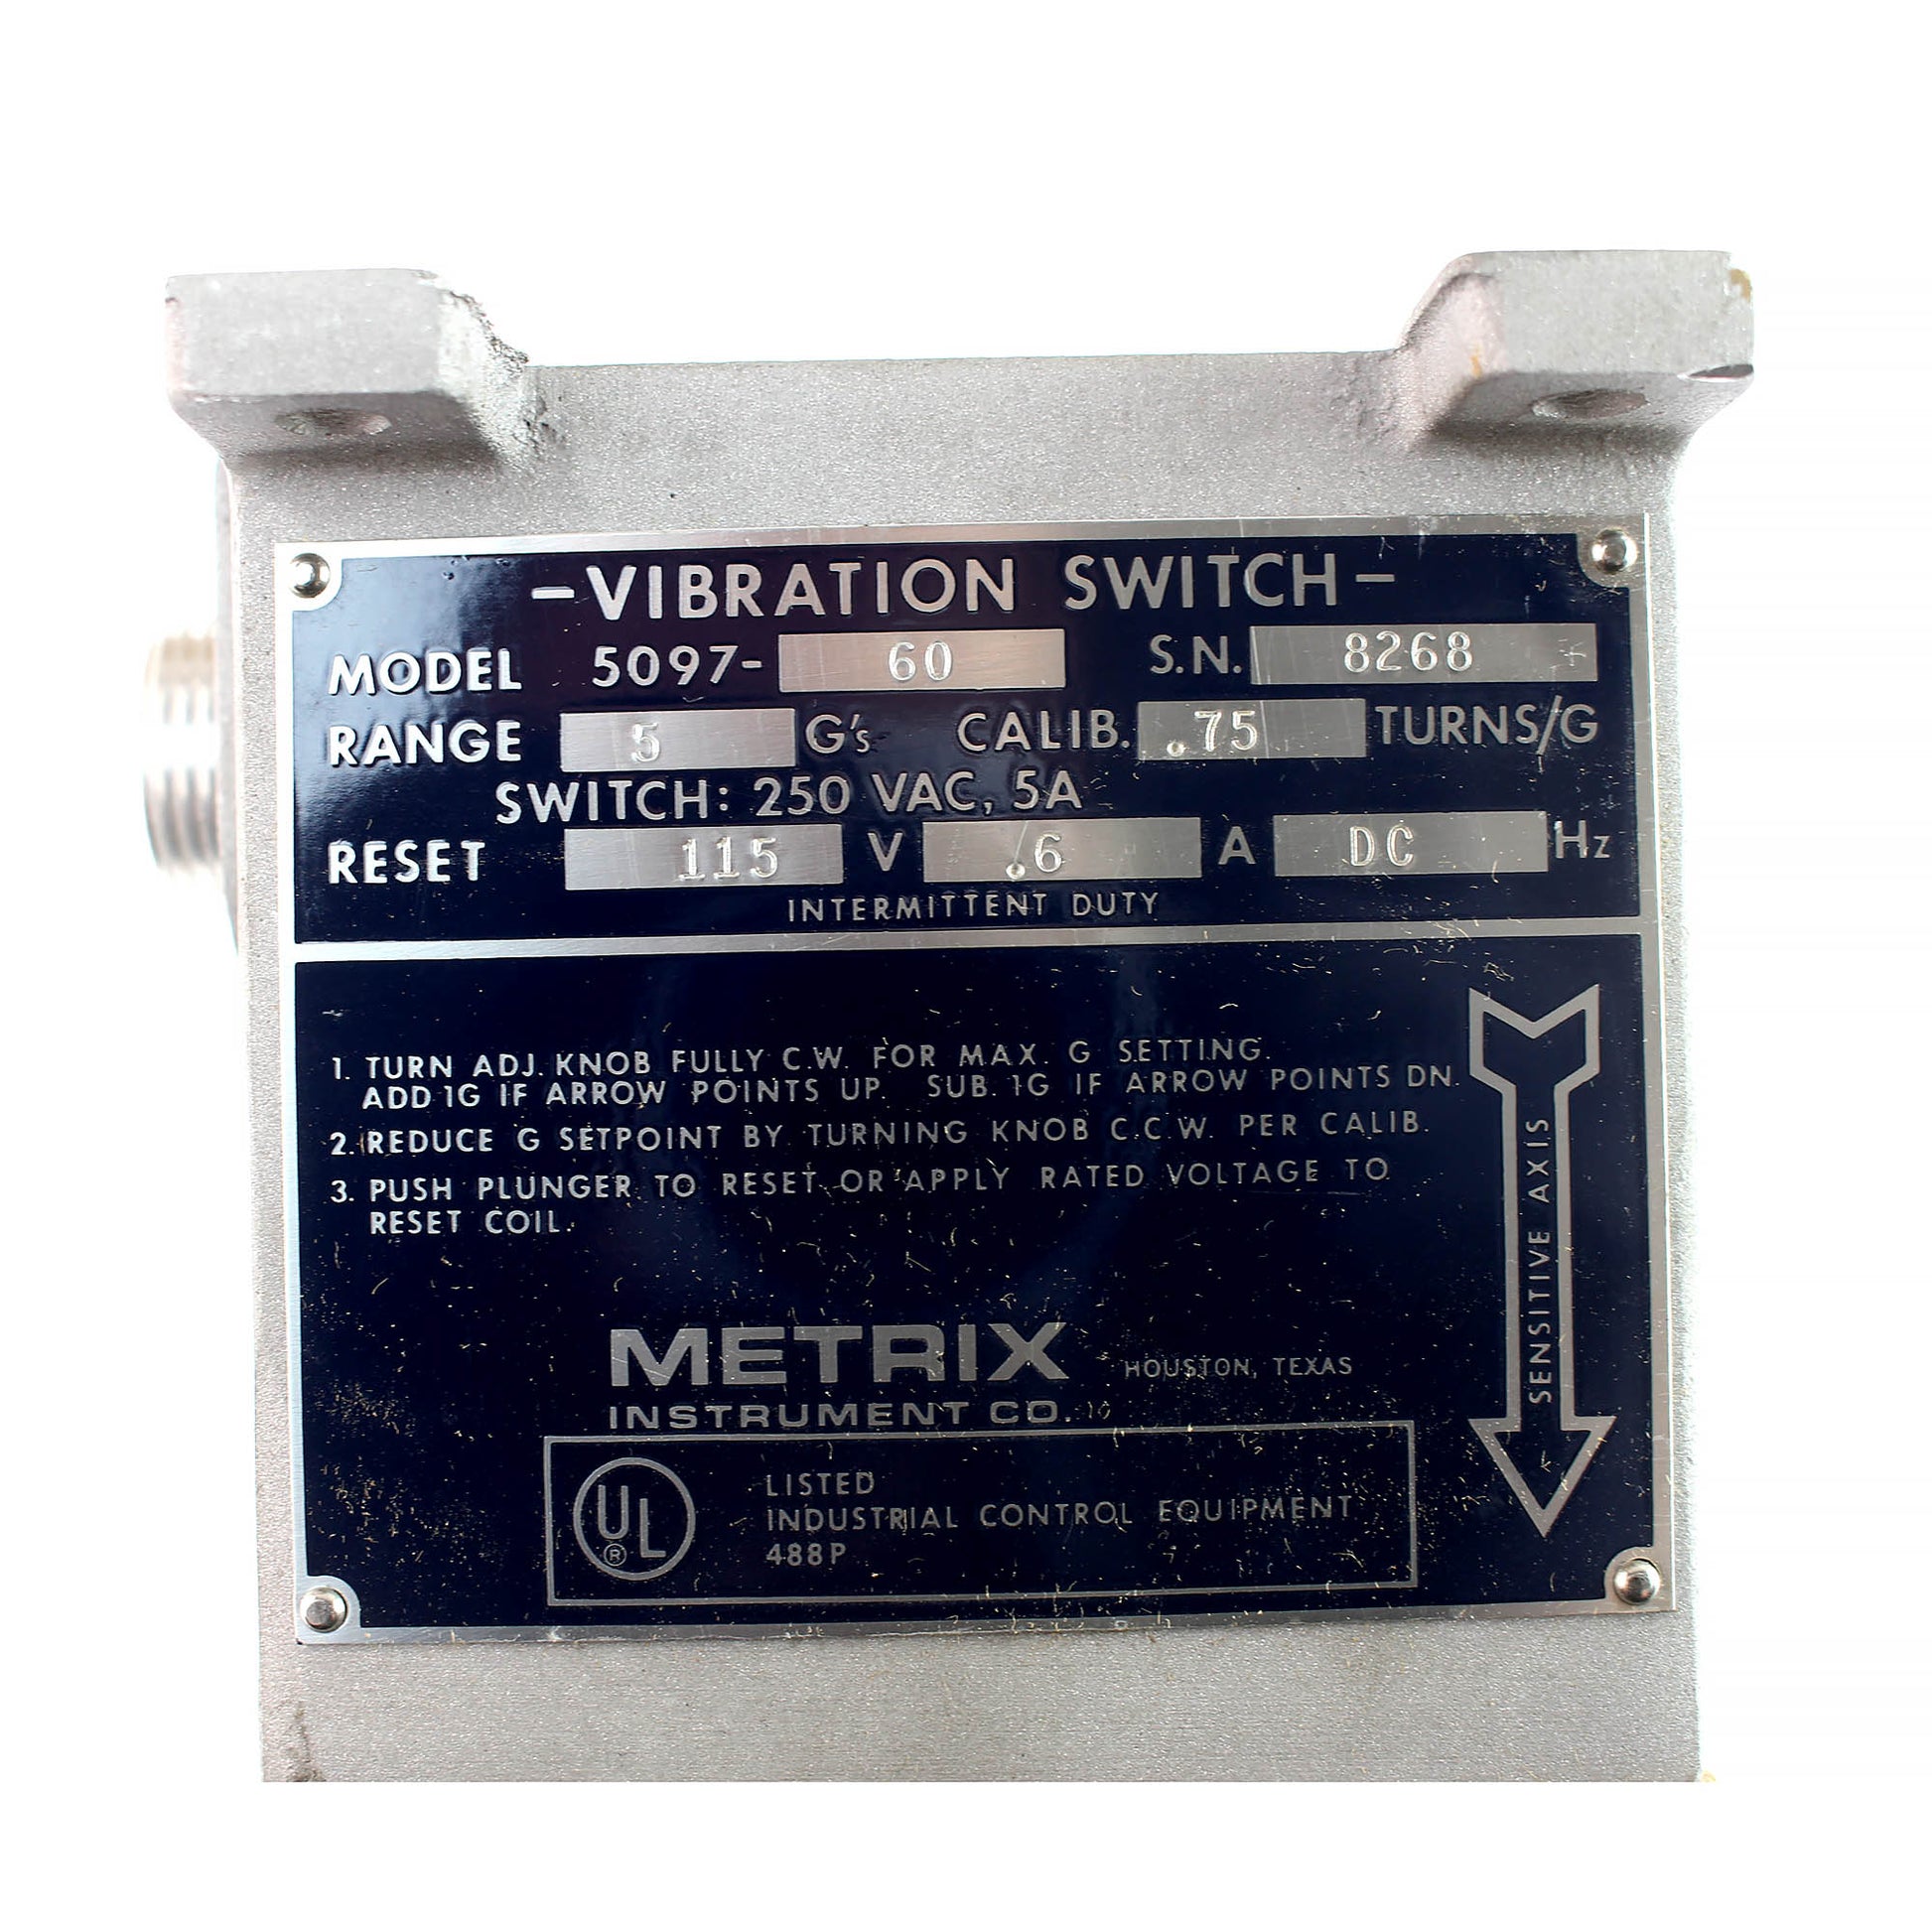 Metrix 5097-60